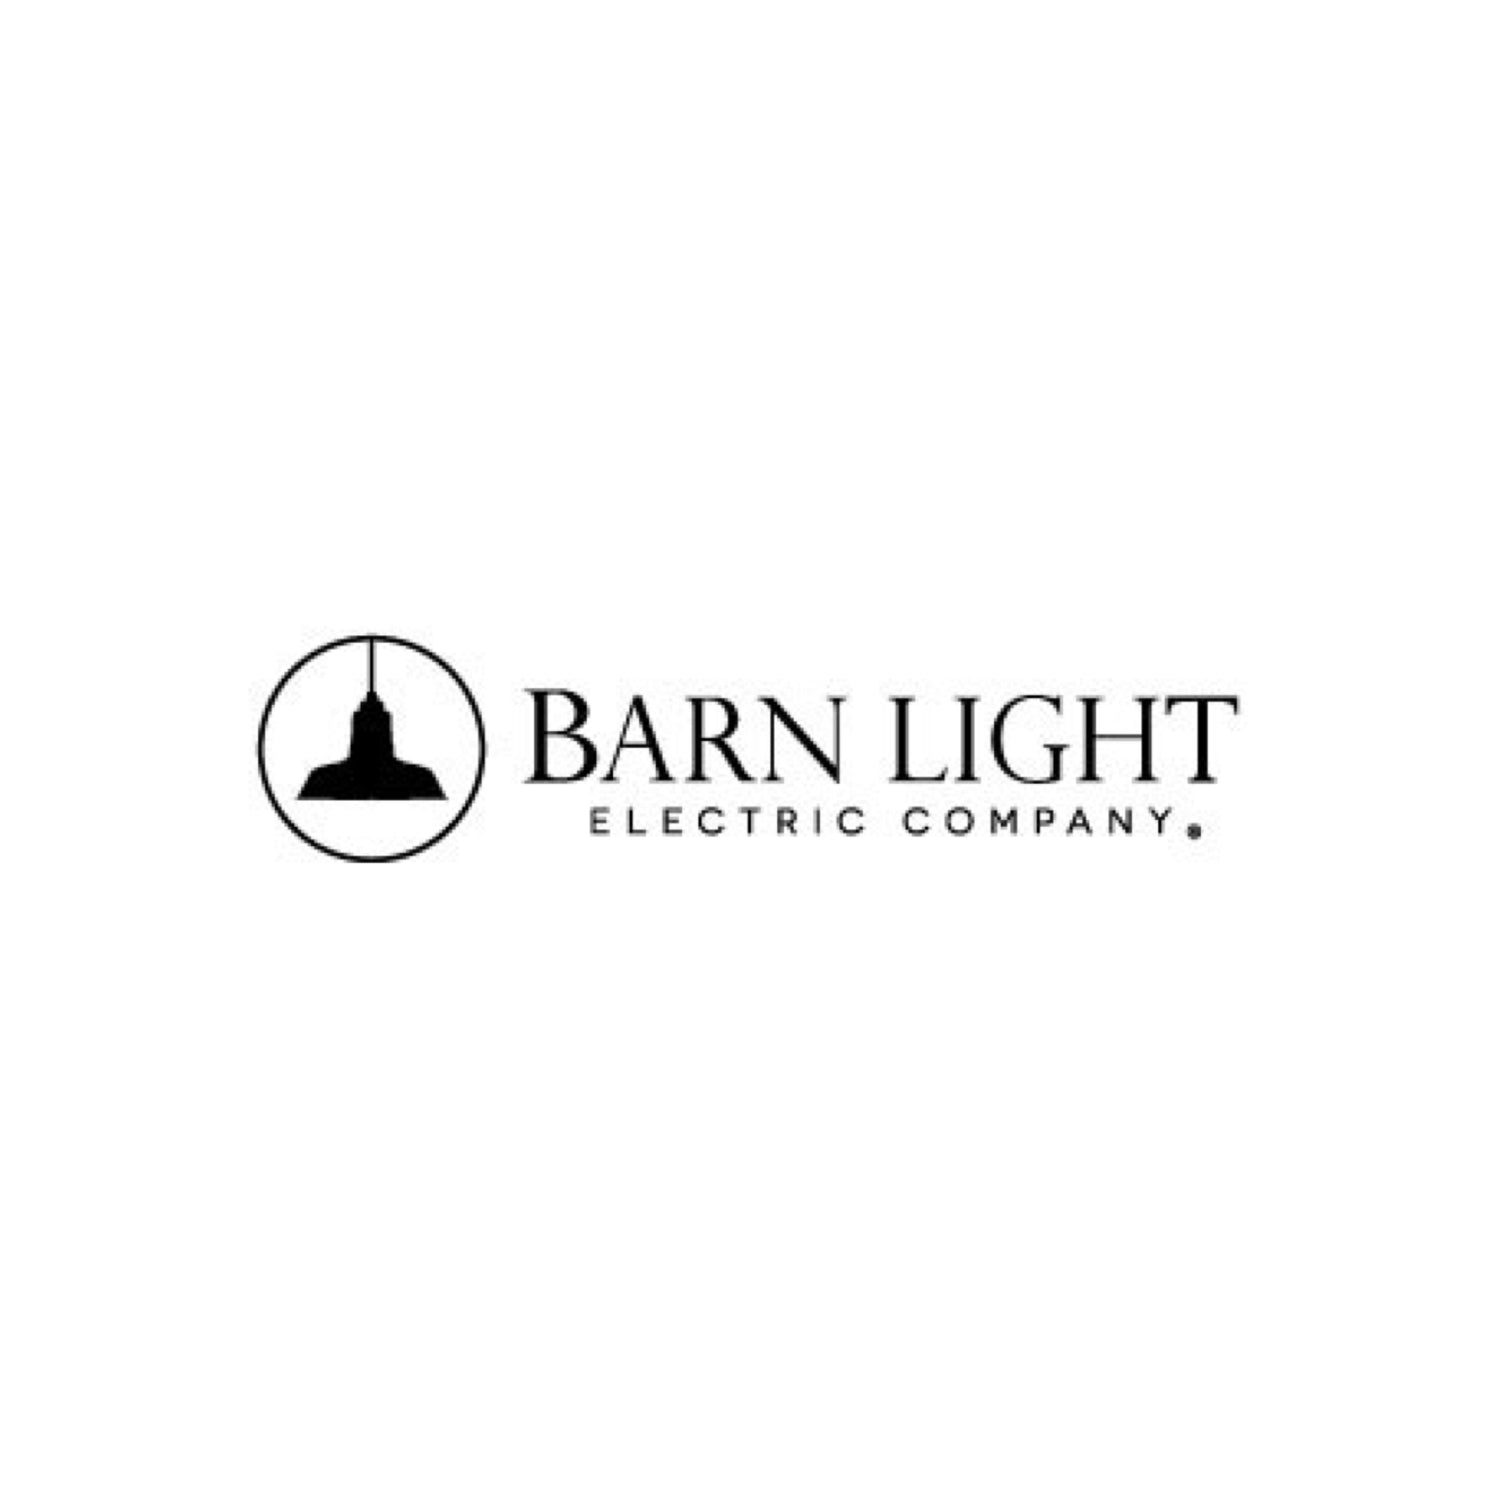 BARN LIGHT LLC